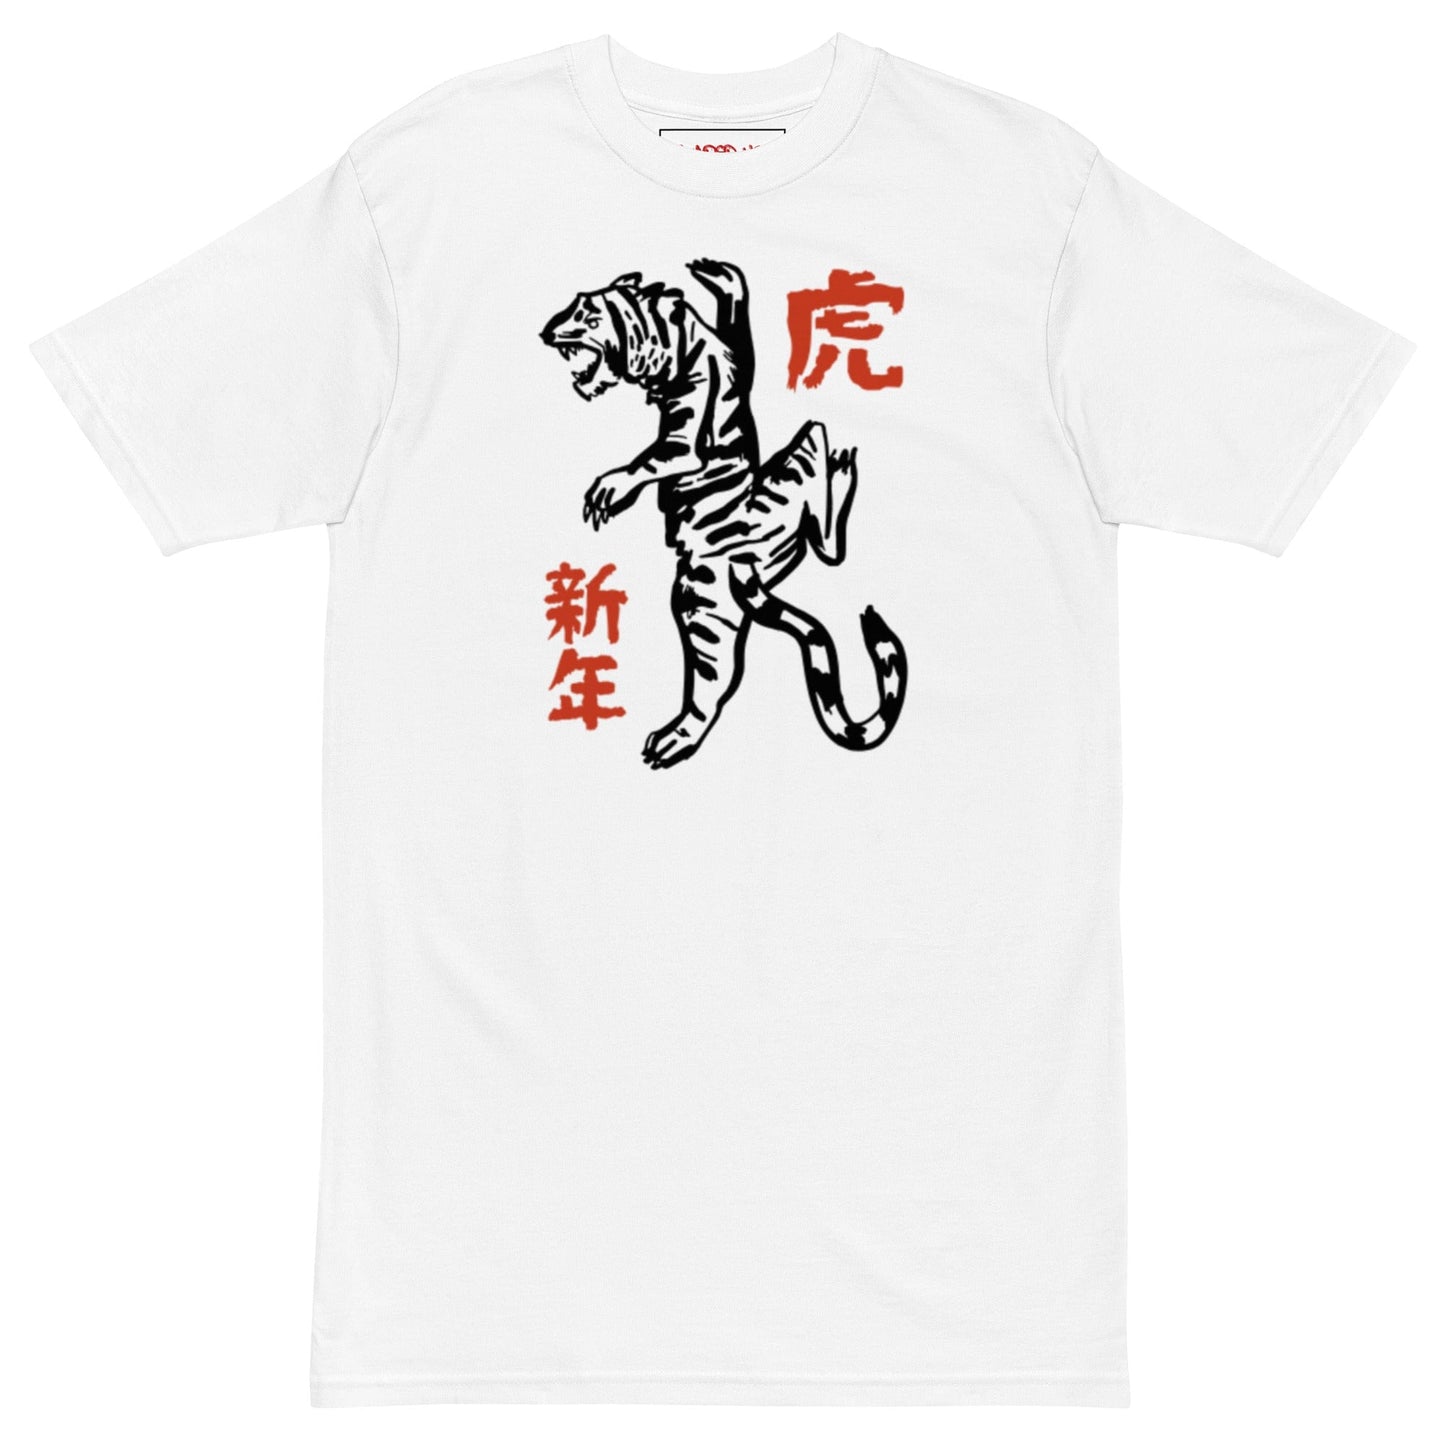 Fashion Tiger Tshirt